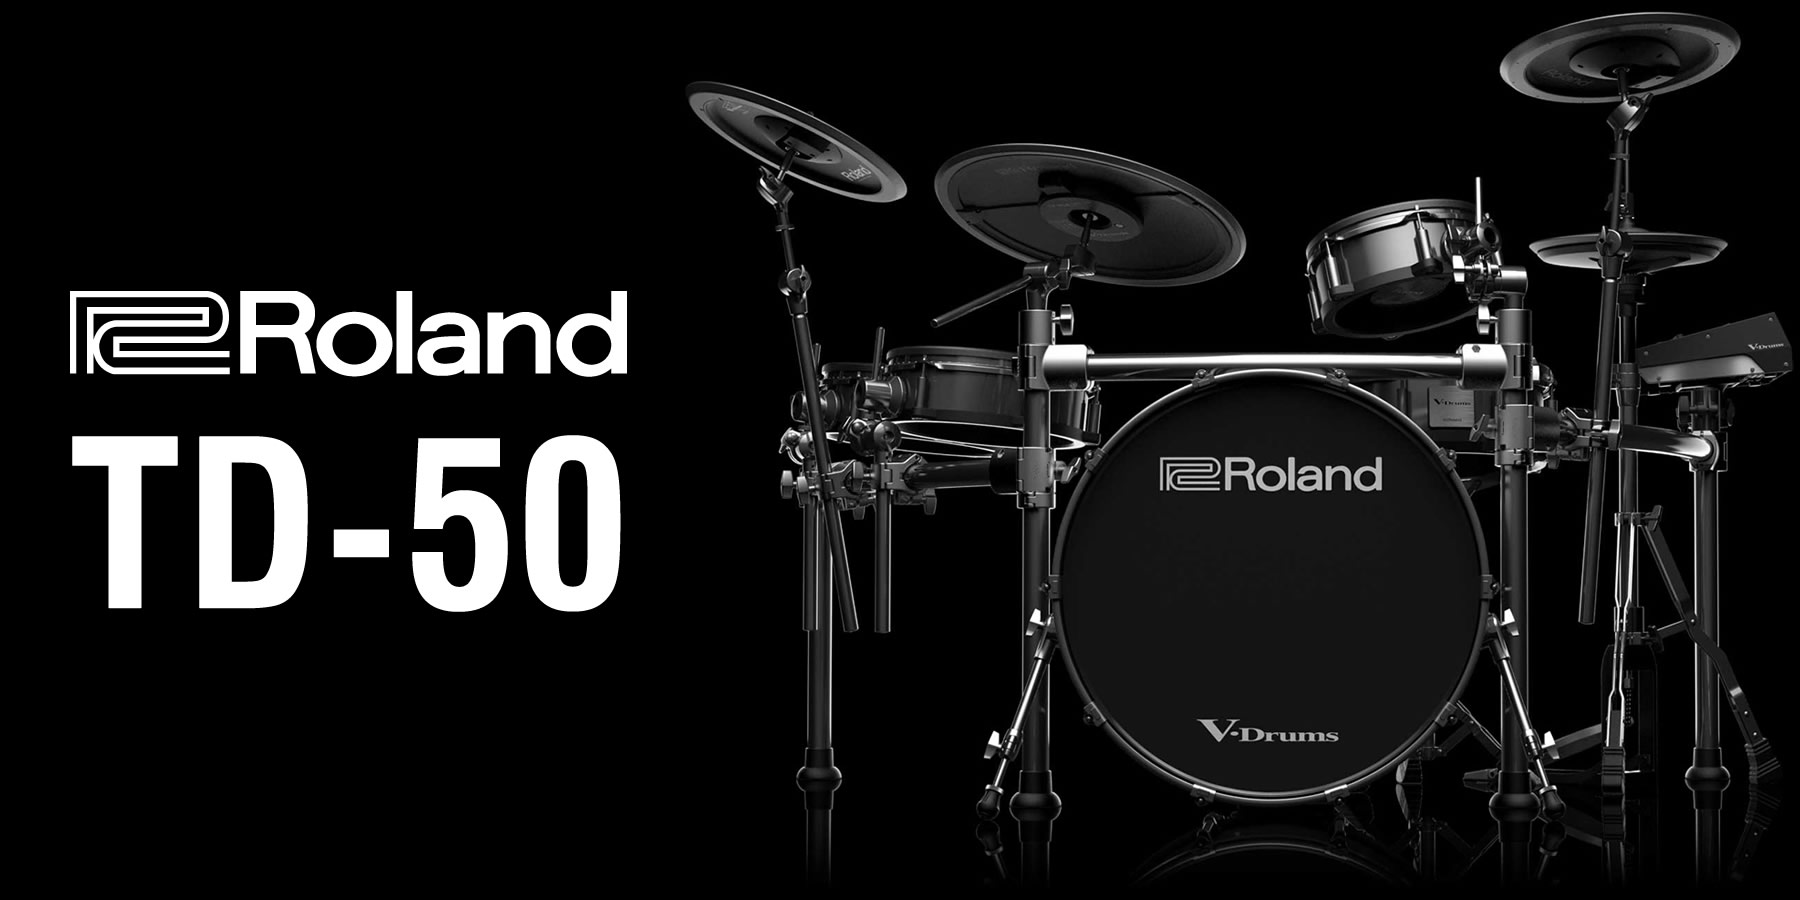 TD-50Xシリーズ | イケベ楽器店【Roland V-Drums】総合カタログ